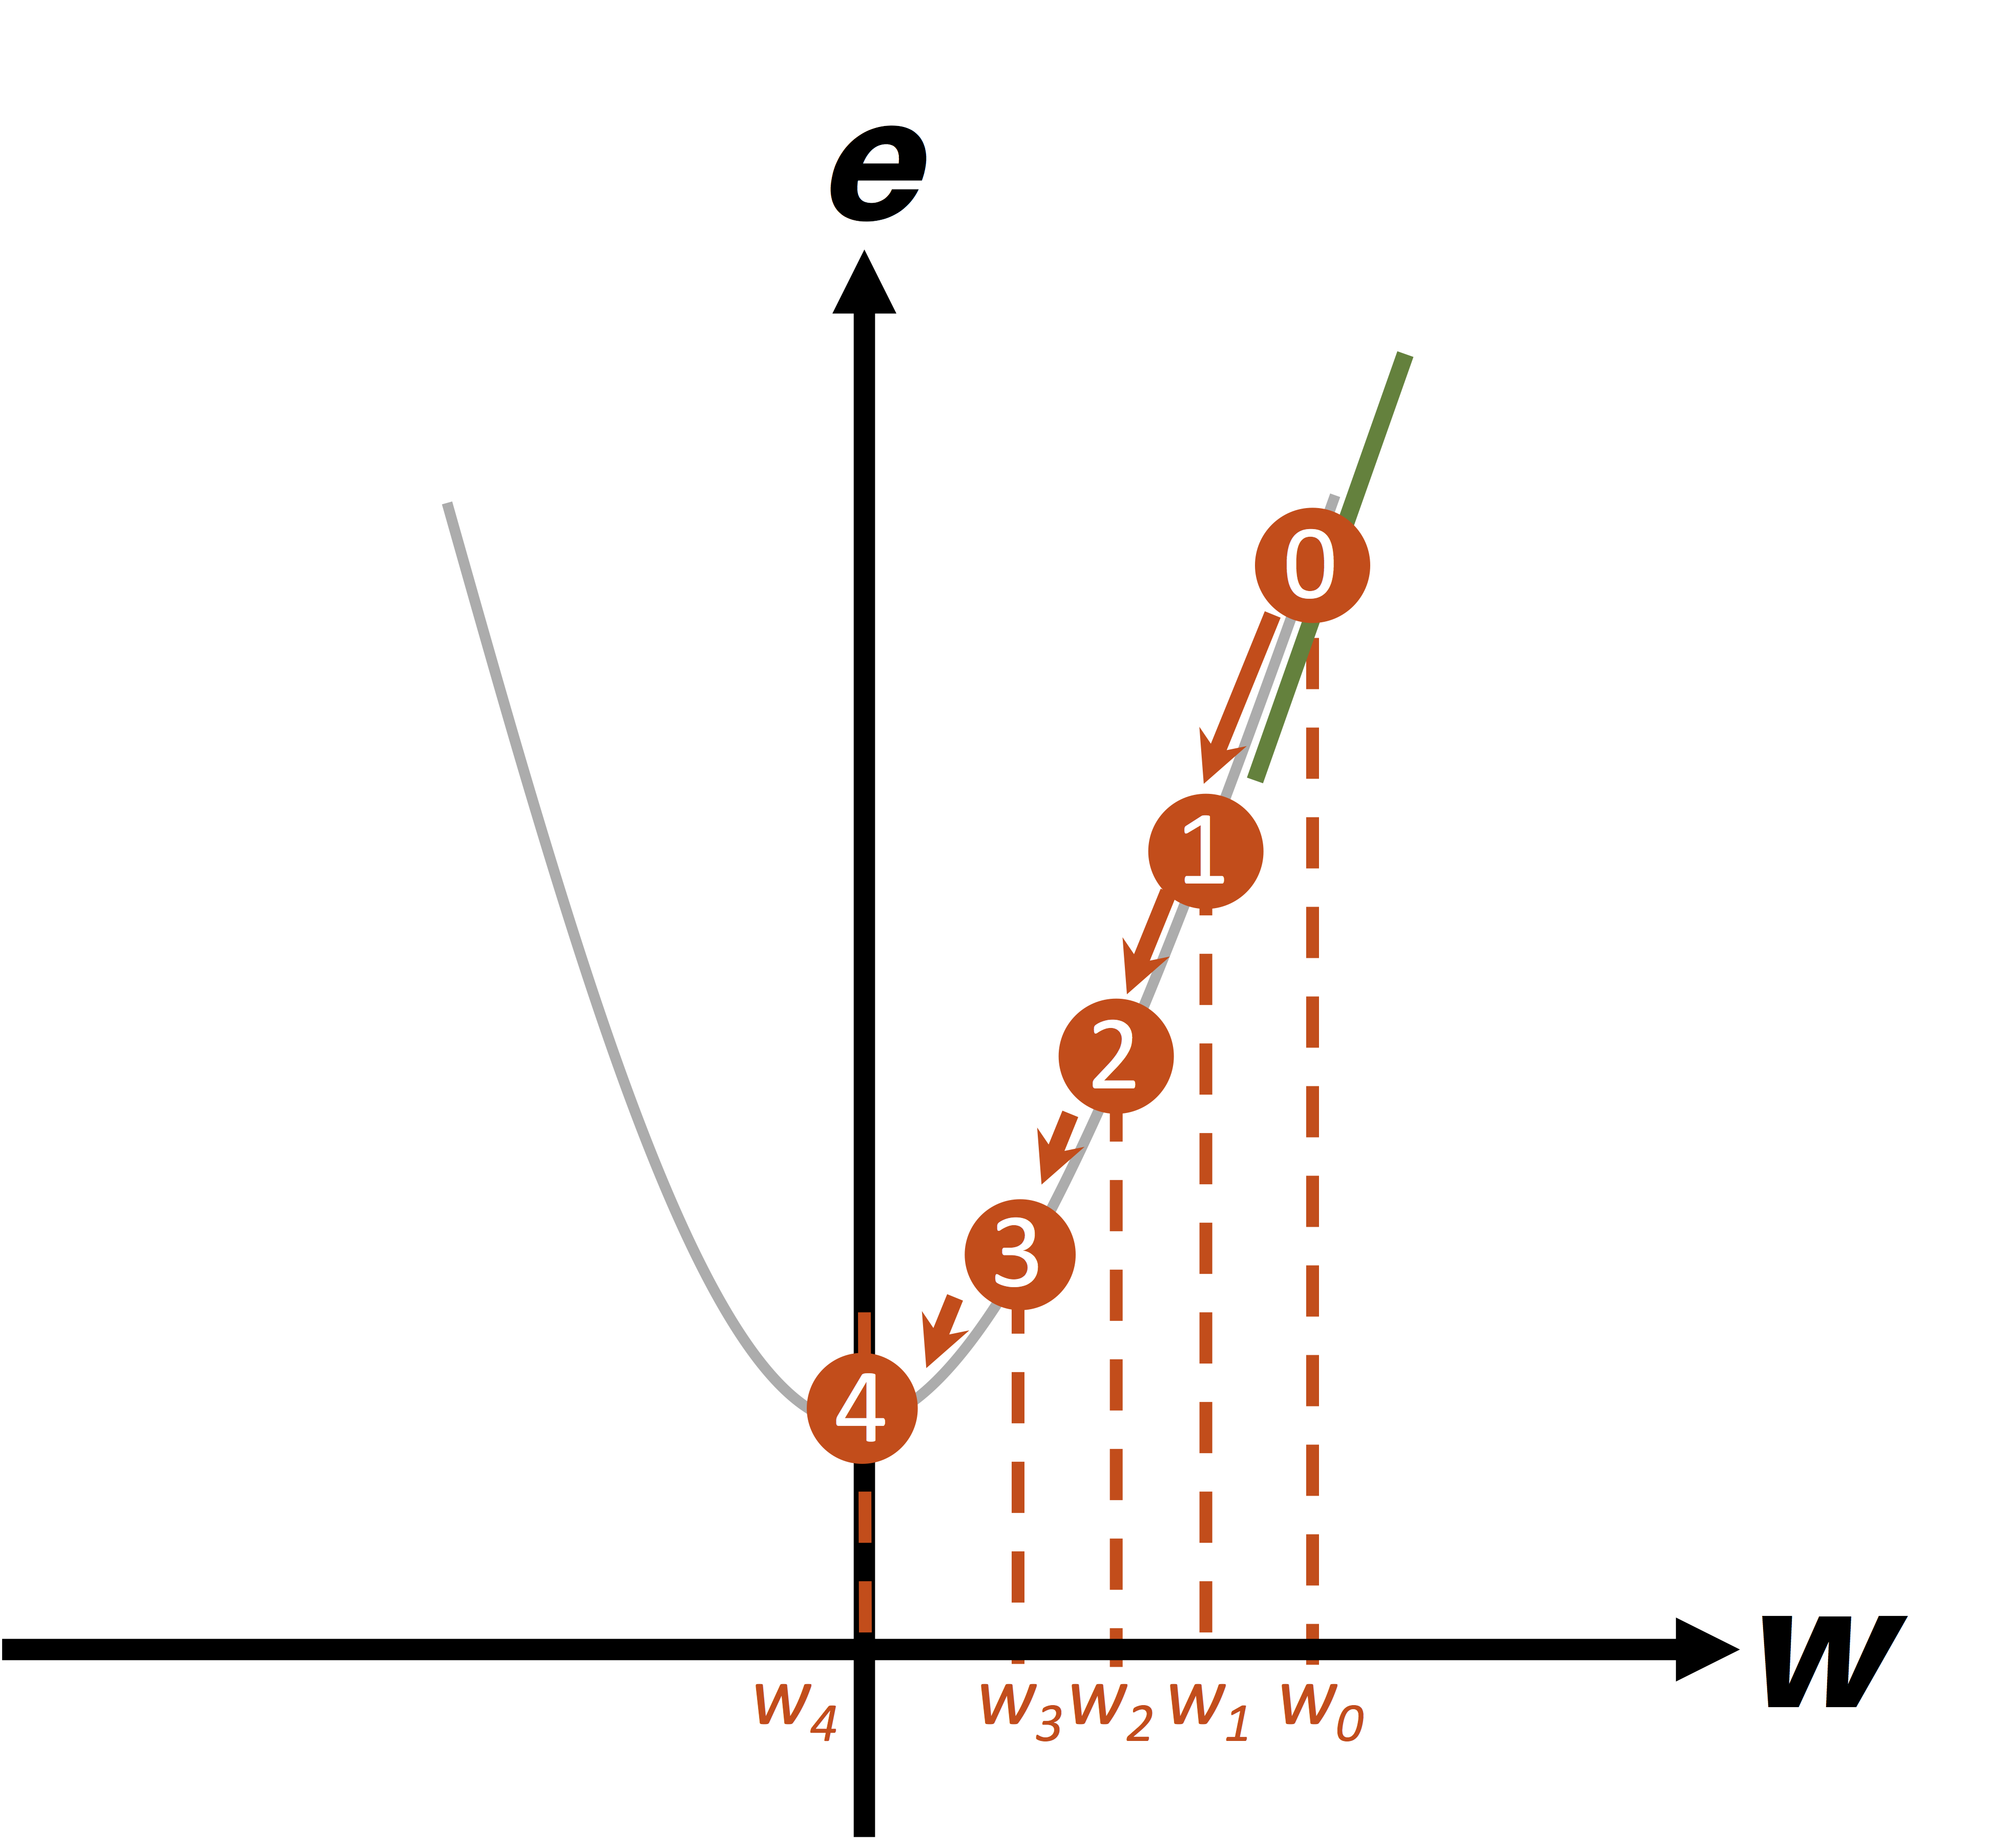 Ejemplo gráfico del gradiente descendente cuando el punto inicial (w) es positivo